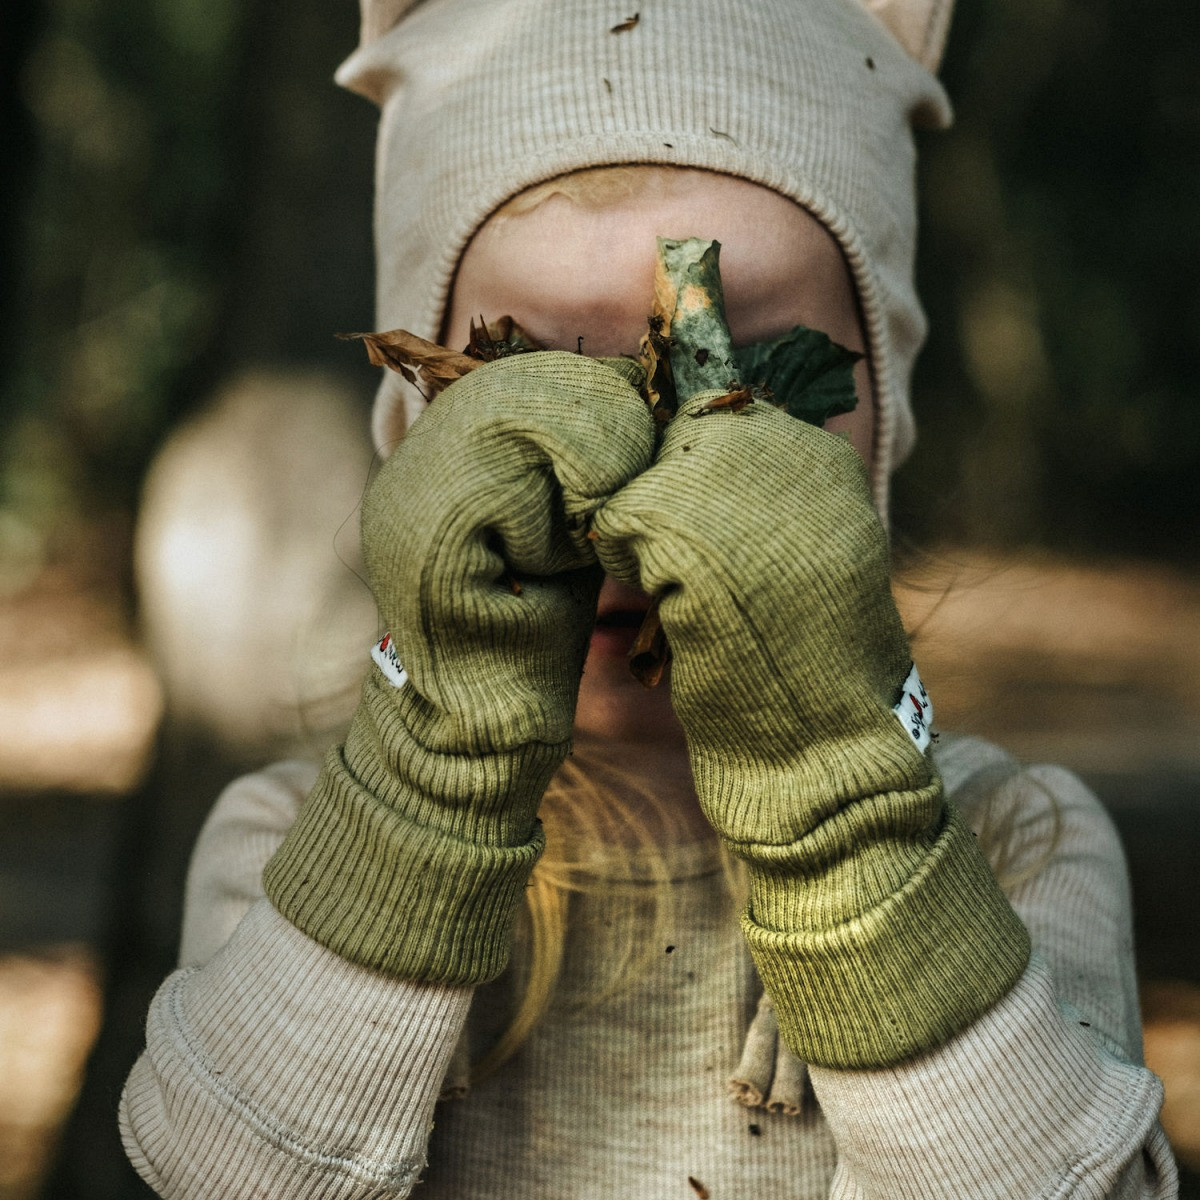 Modele pour moufles gants pour bébé en laine merinos et cachemire